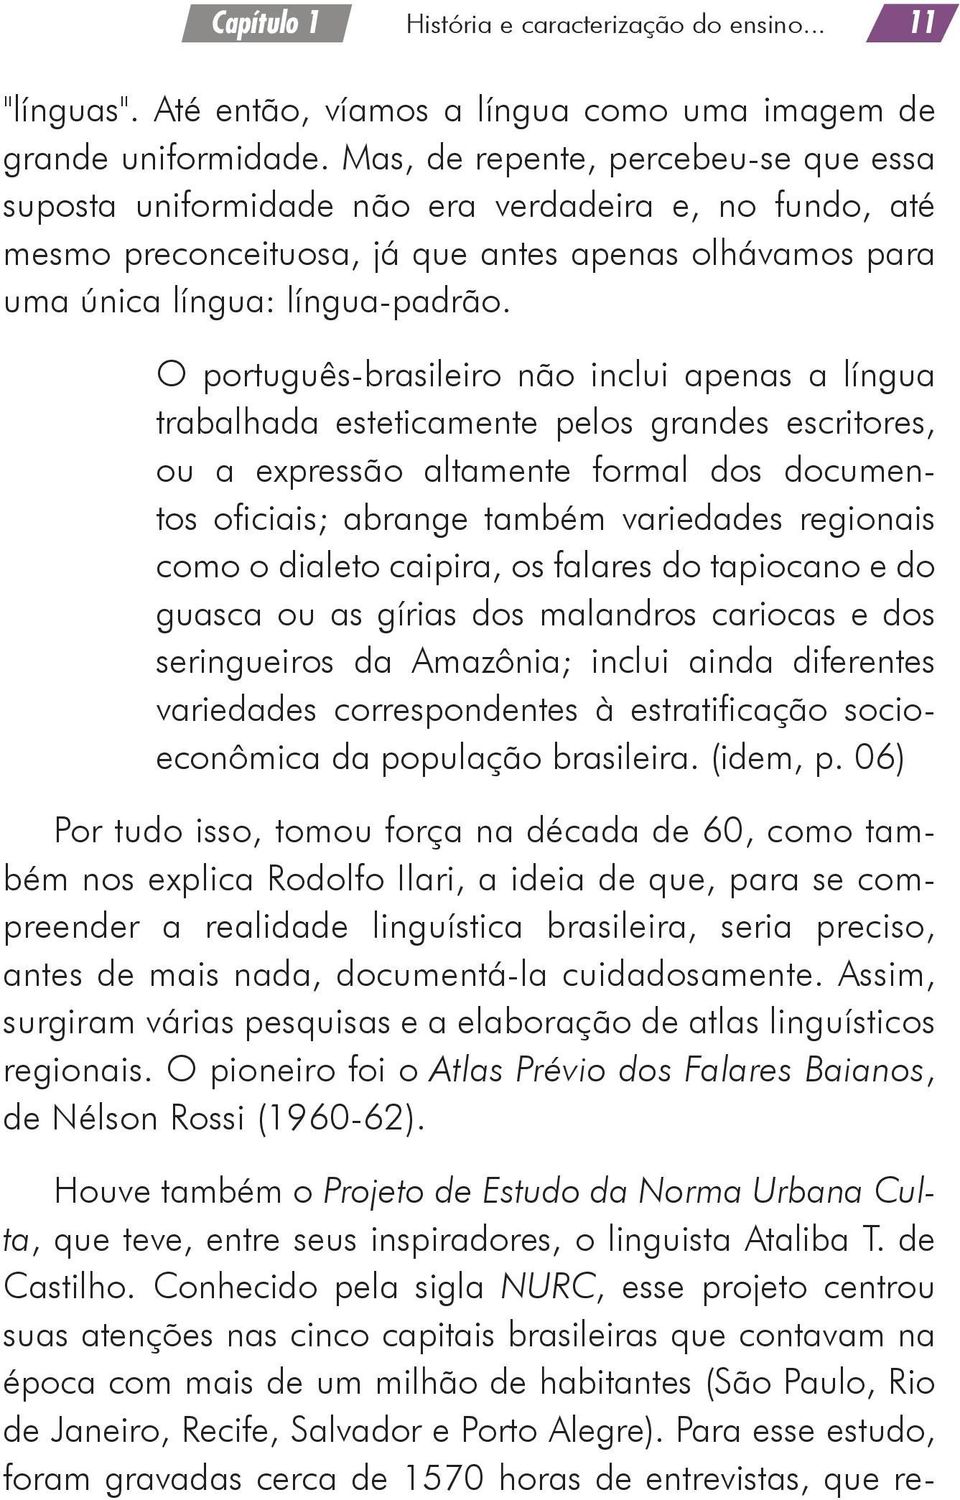 O português-brasileiro não inclui apenas a língua trabalhada esteticamente pelos grandes escritores, ou a expressão altamente formal dos documentos oficiais; abrange também variedades regionais como